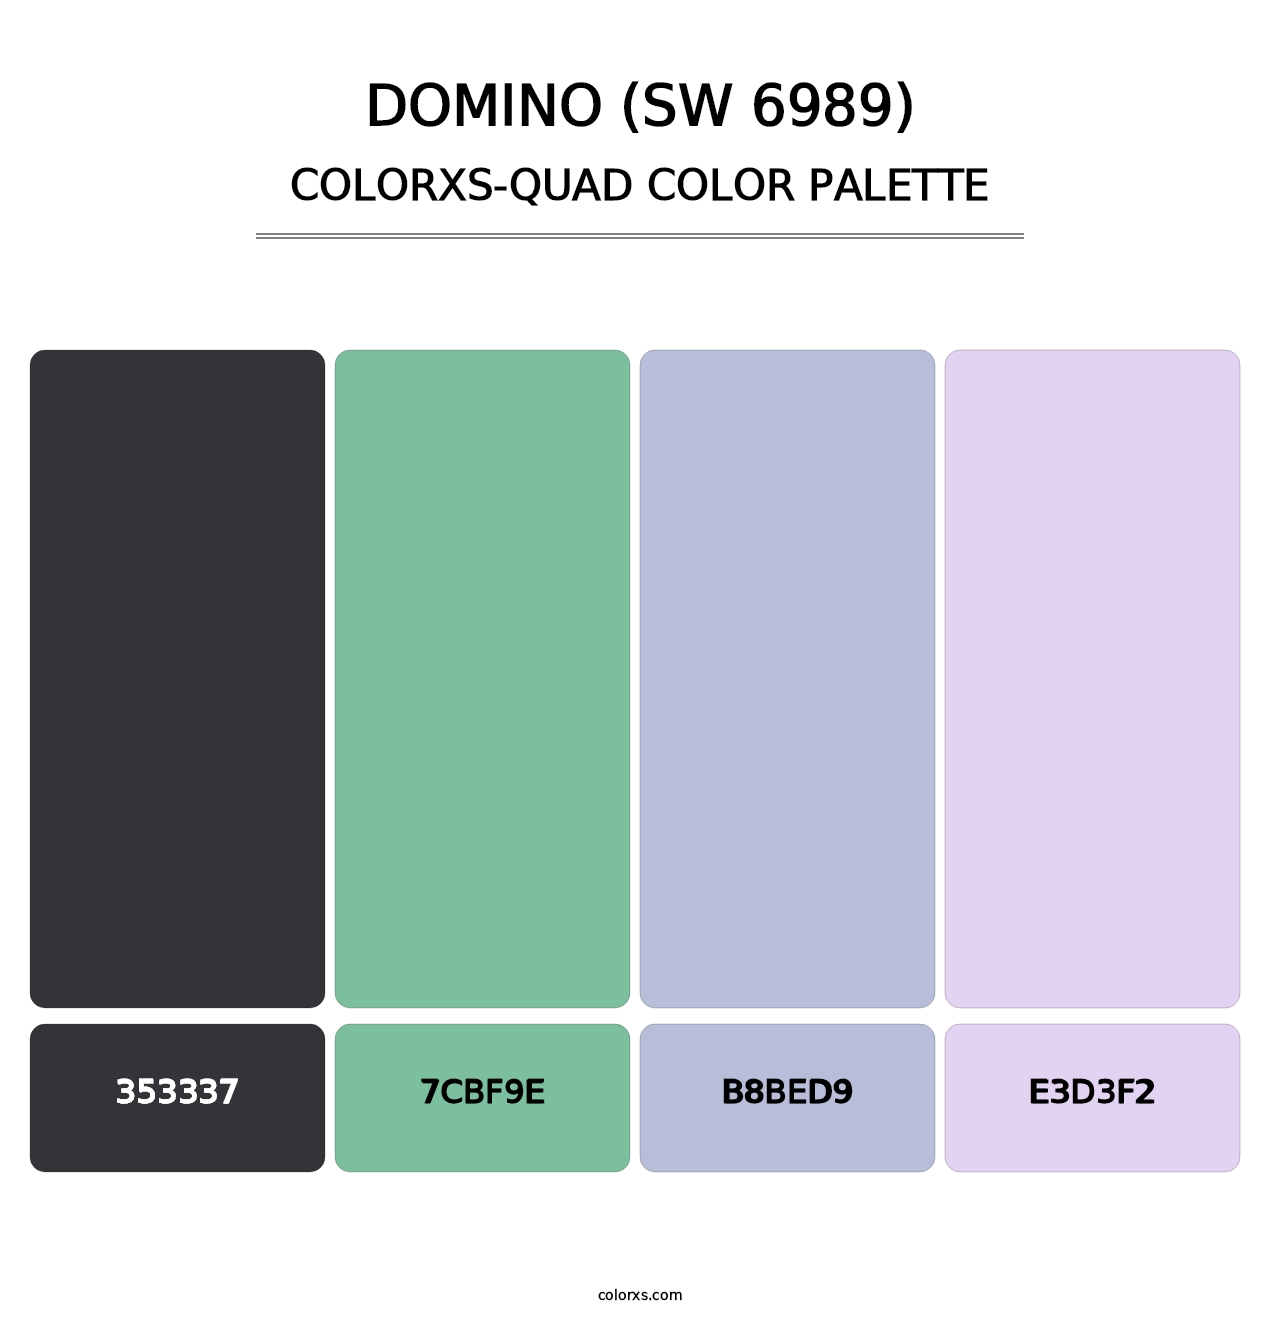 Domino (SW 6989) - Colorxs Quad Palette